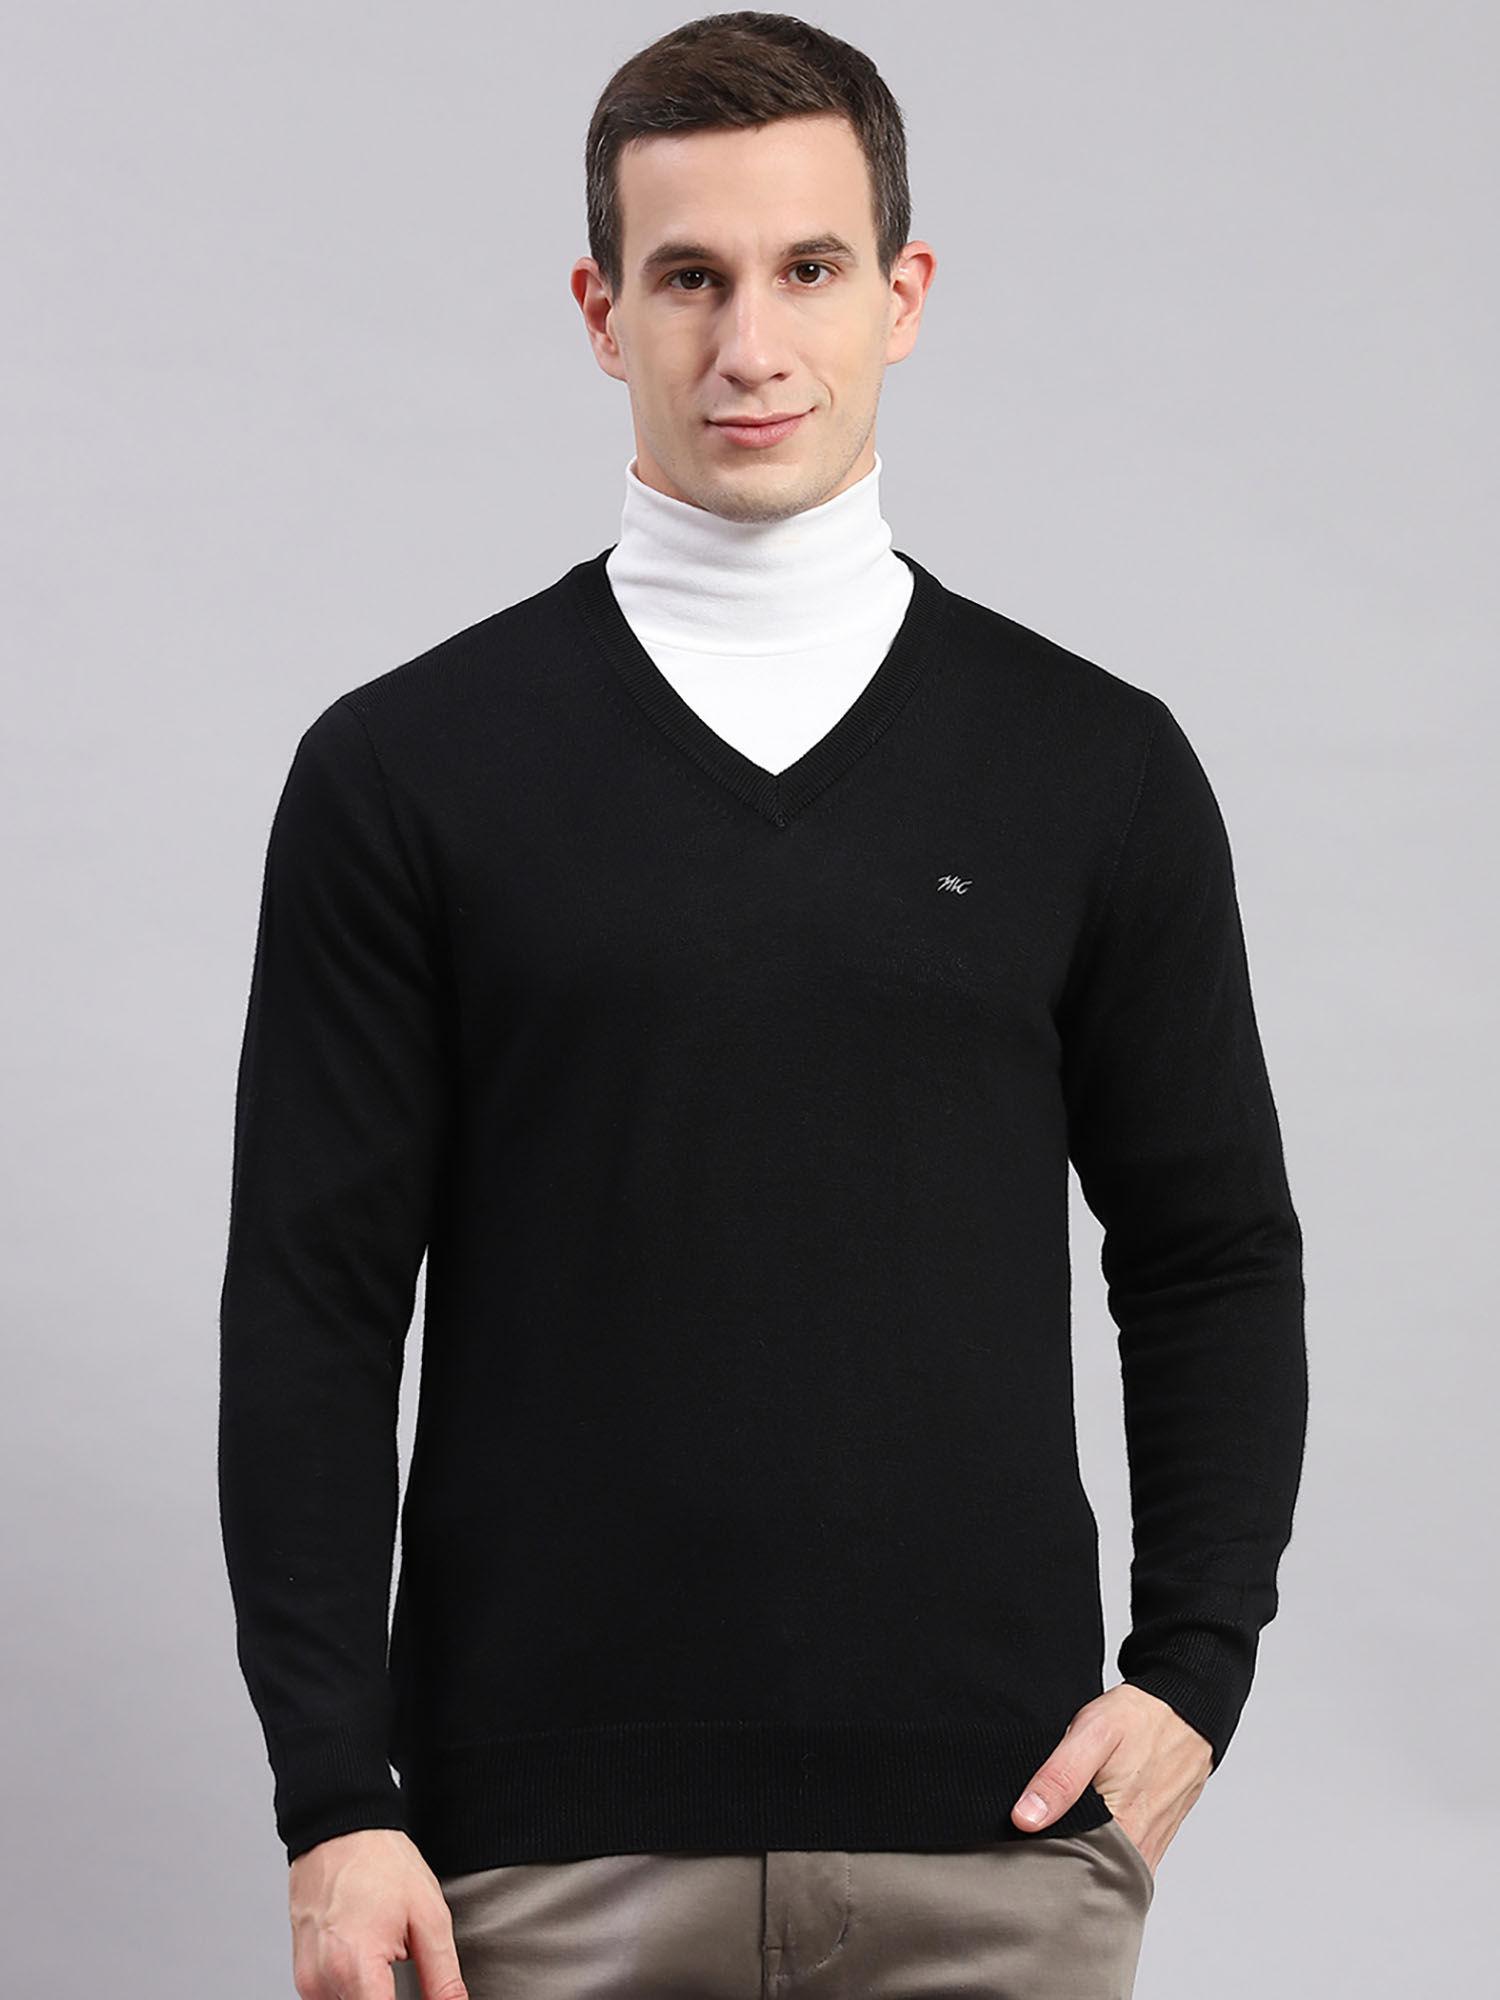 black-solid-v-neck-sweater